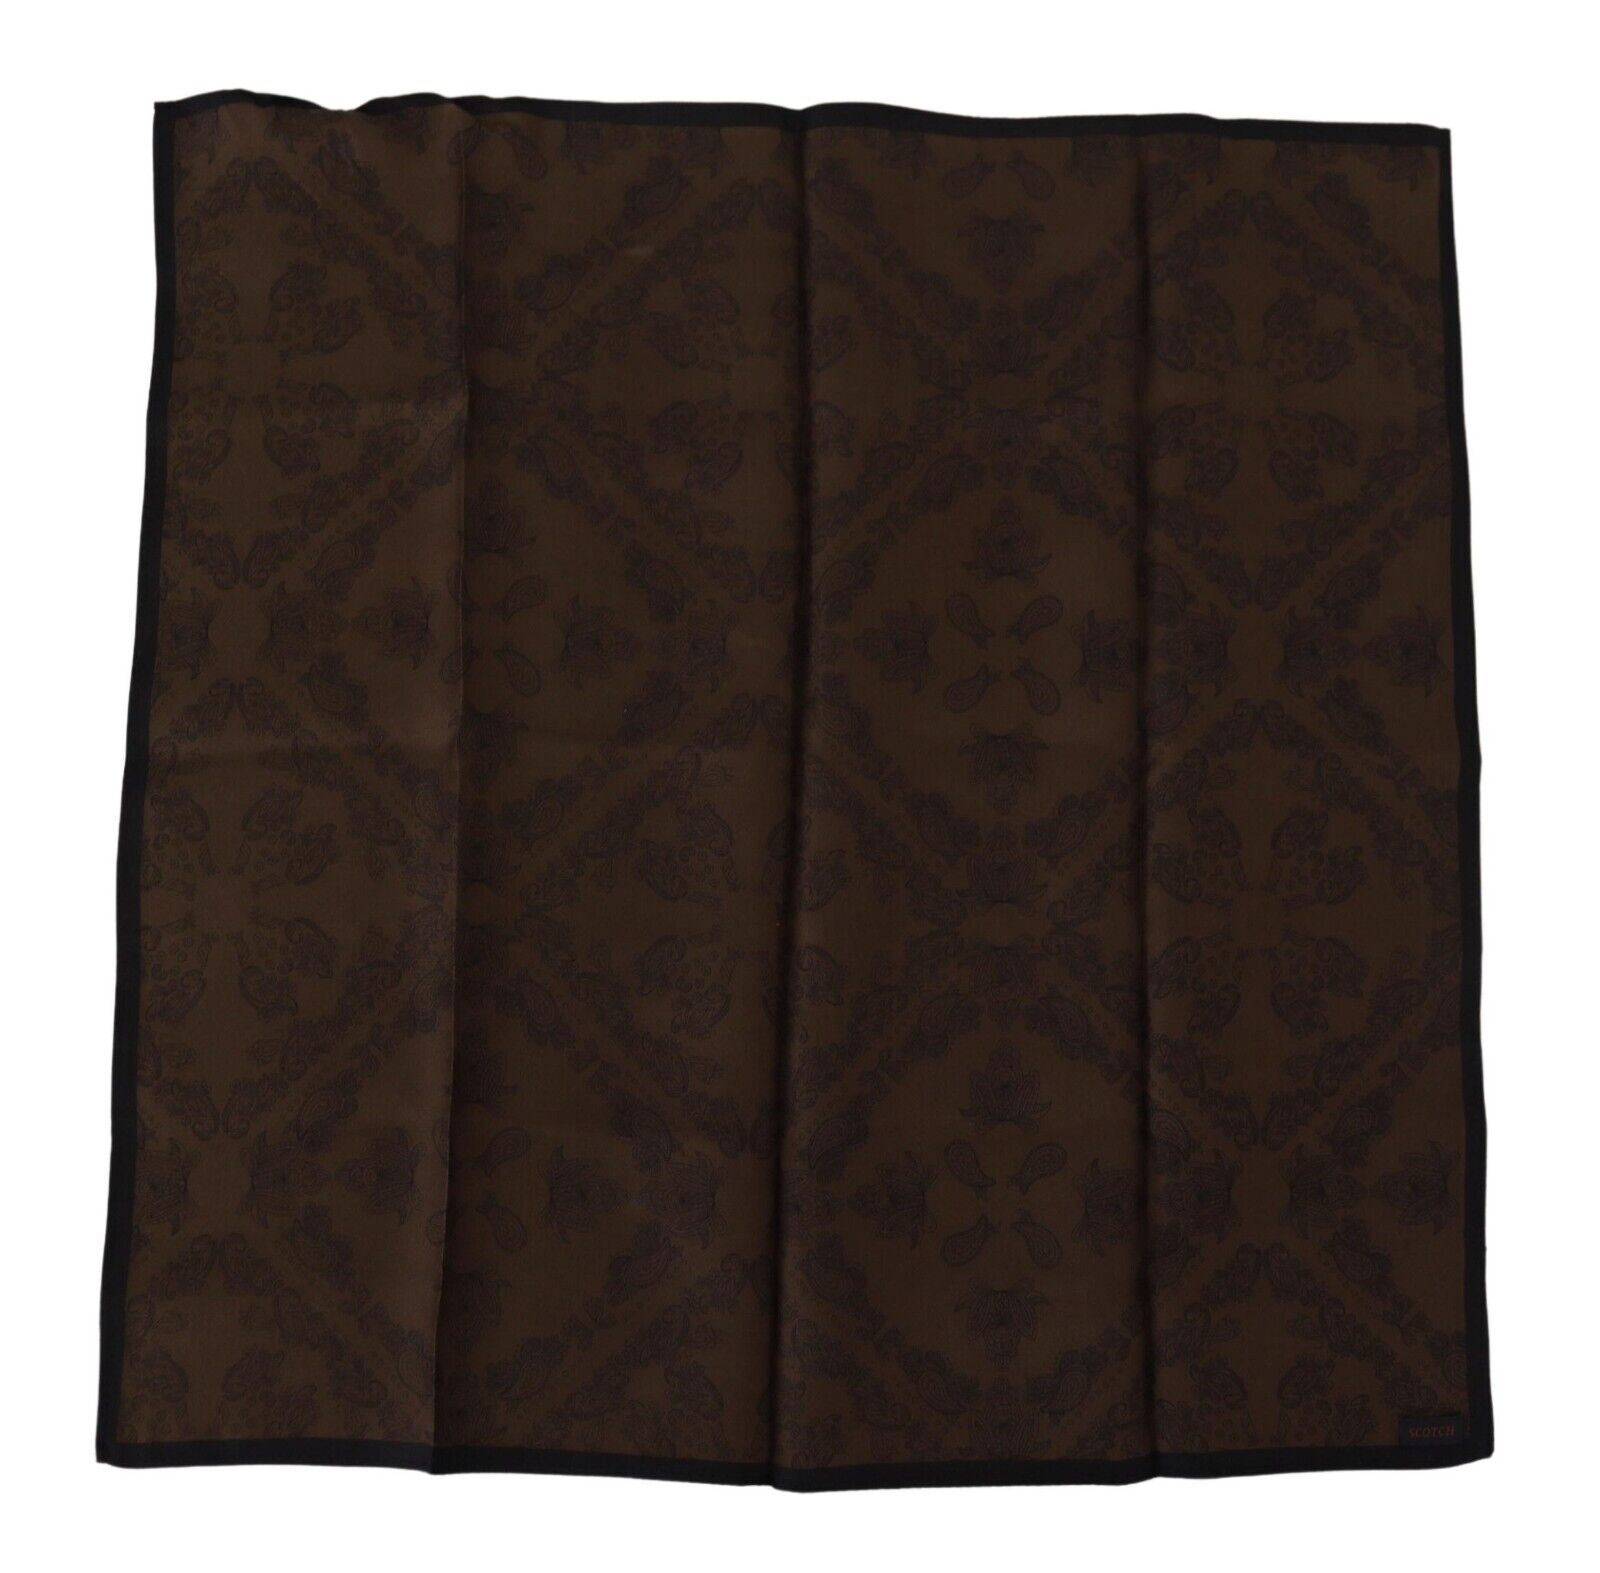 Шарф SCOTCH & SODA Коричневый платок с узором, квадратный носовой платок 44см x 44см 120долл. США